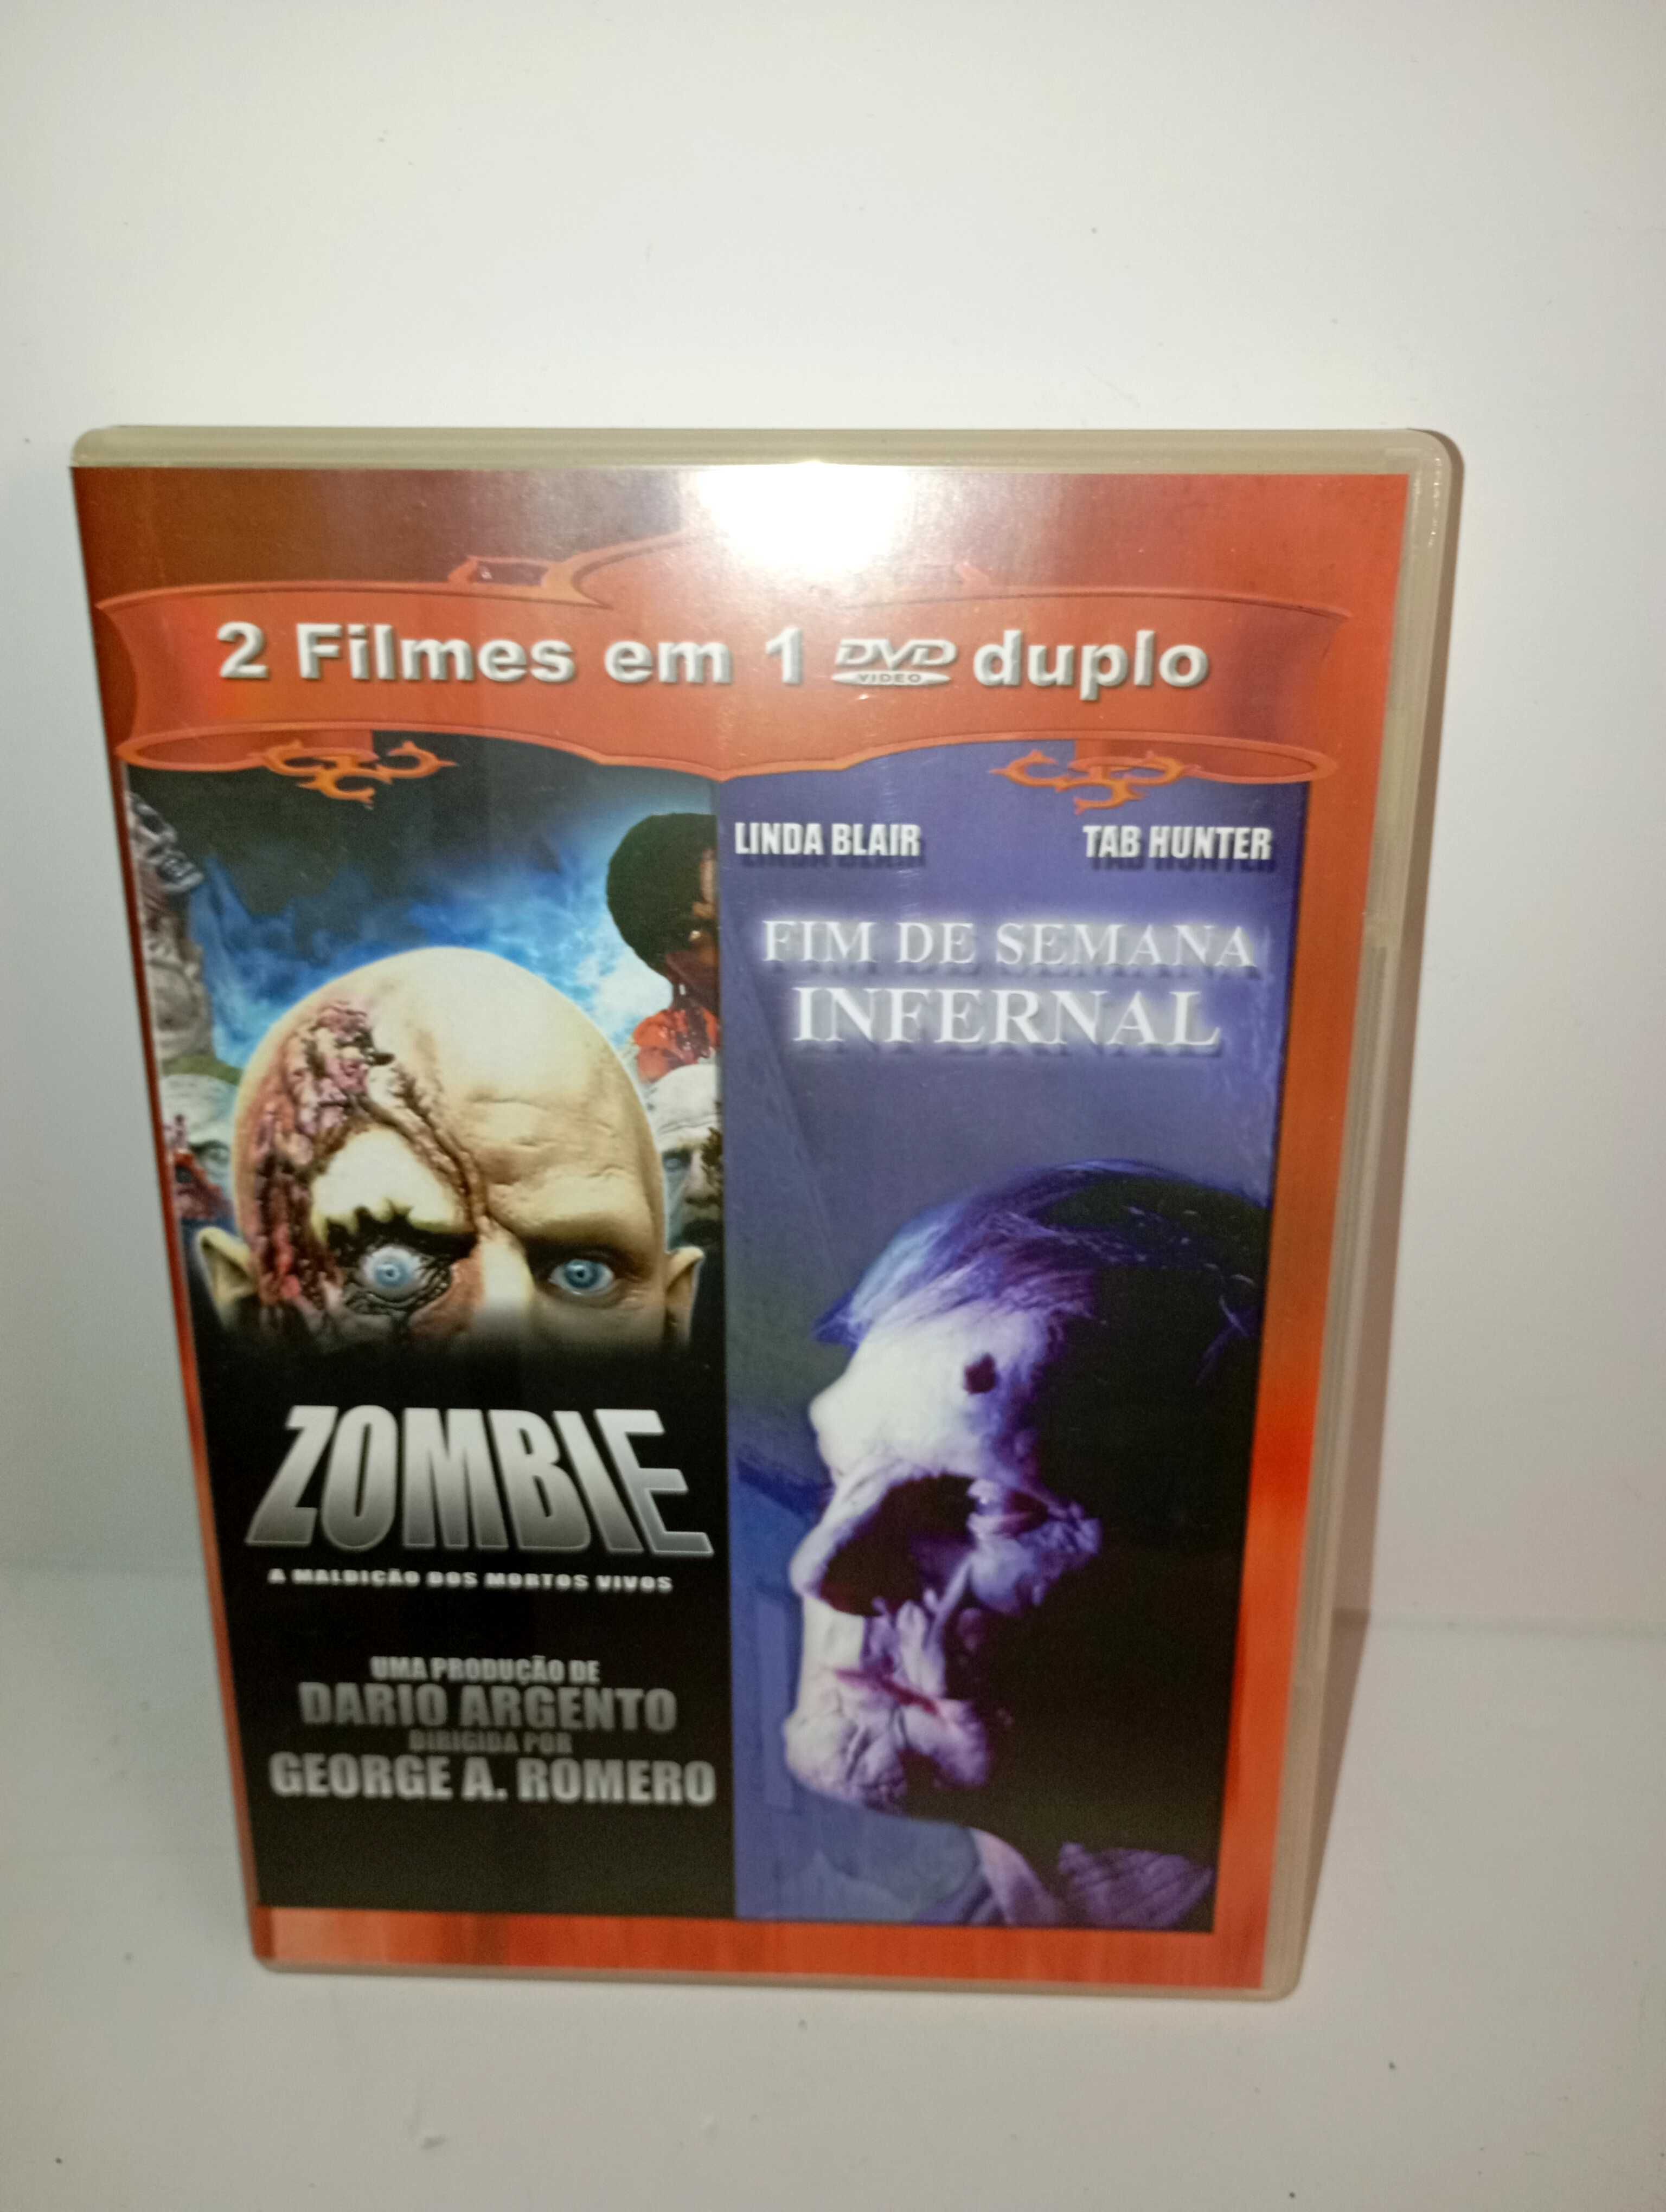 Zombie e Fim de semana infernal - DVD Original